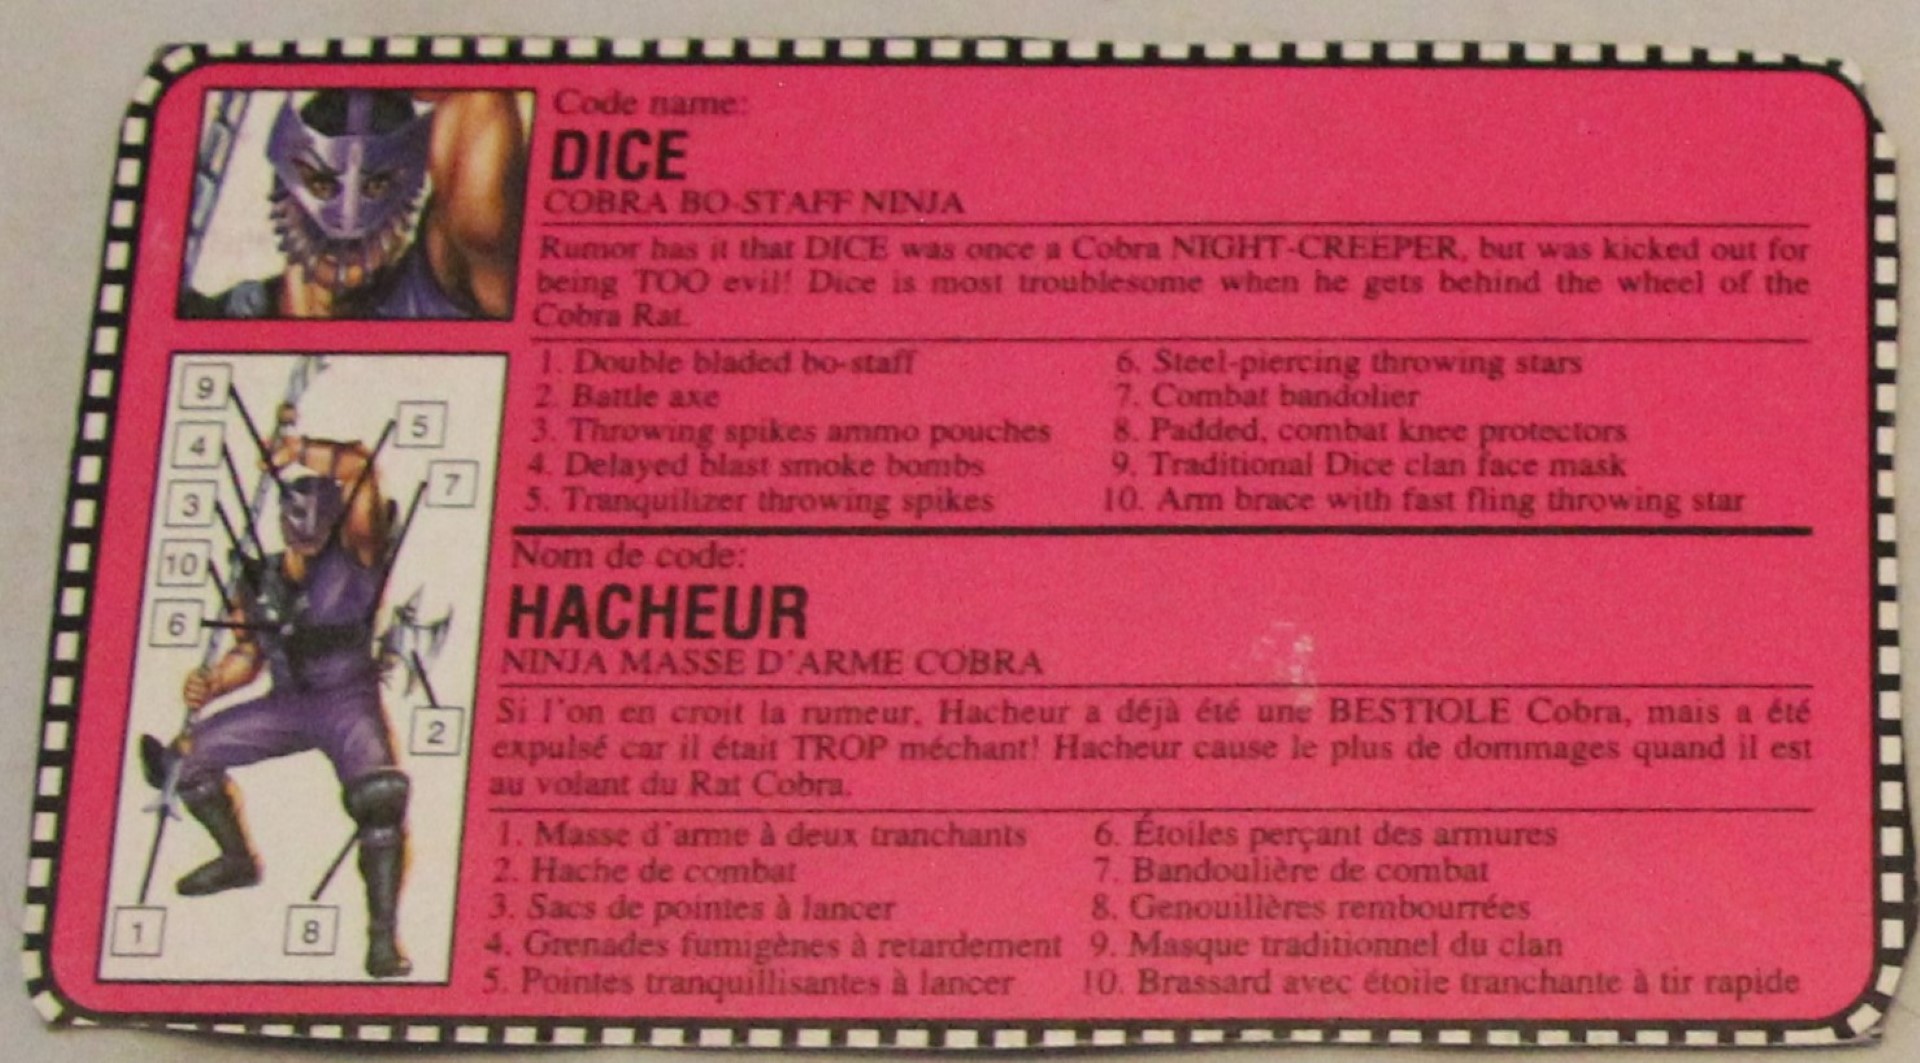 1992 dice file card